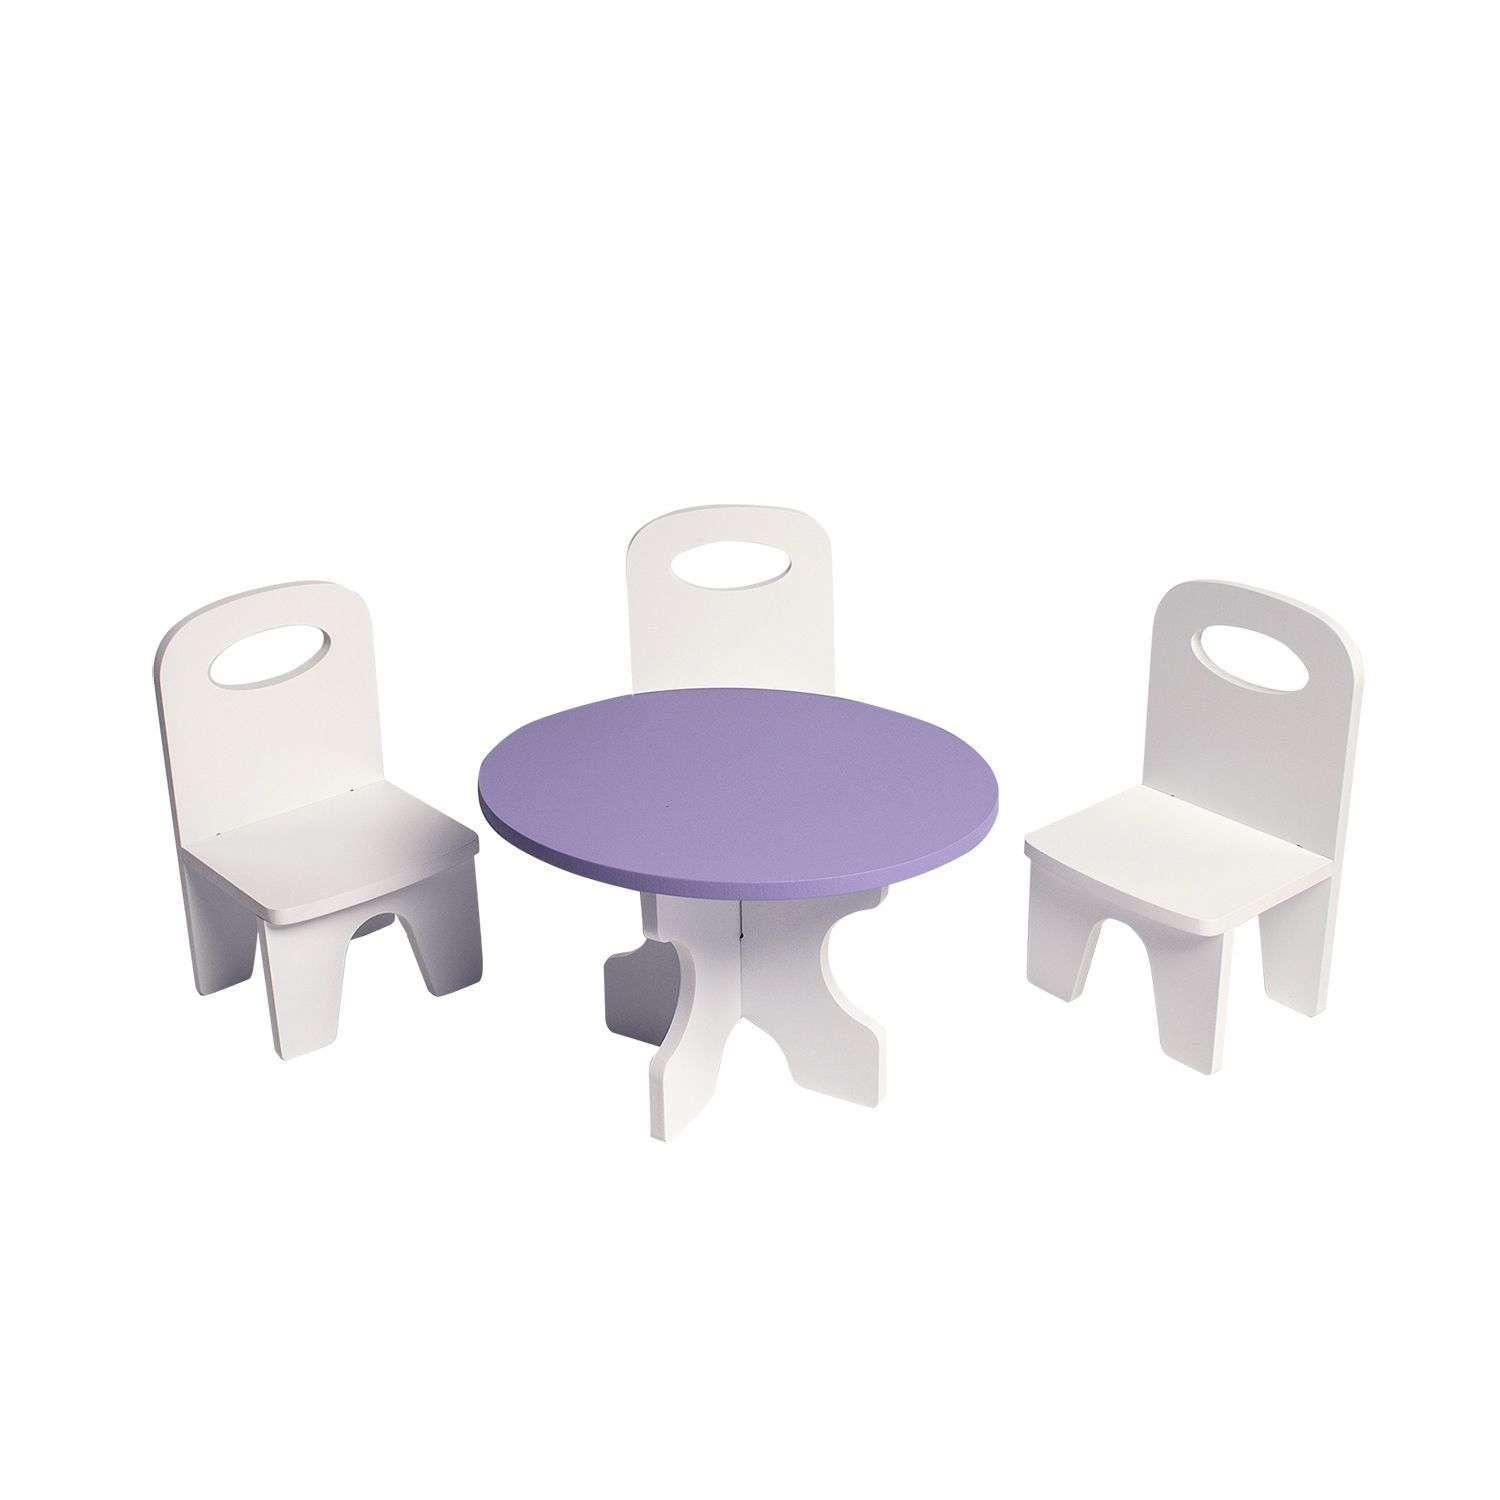 Мебель для кукол Paremo Классика набор 4предмета Белый-фиолетовый PFD120-40 PFD120-40 - фото 1